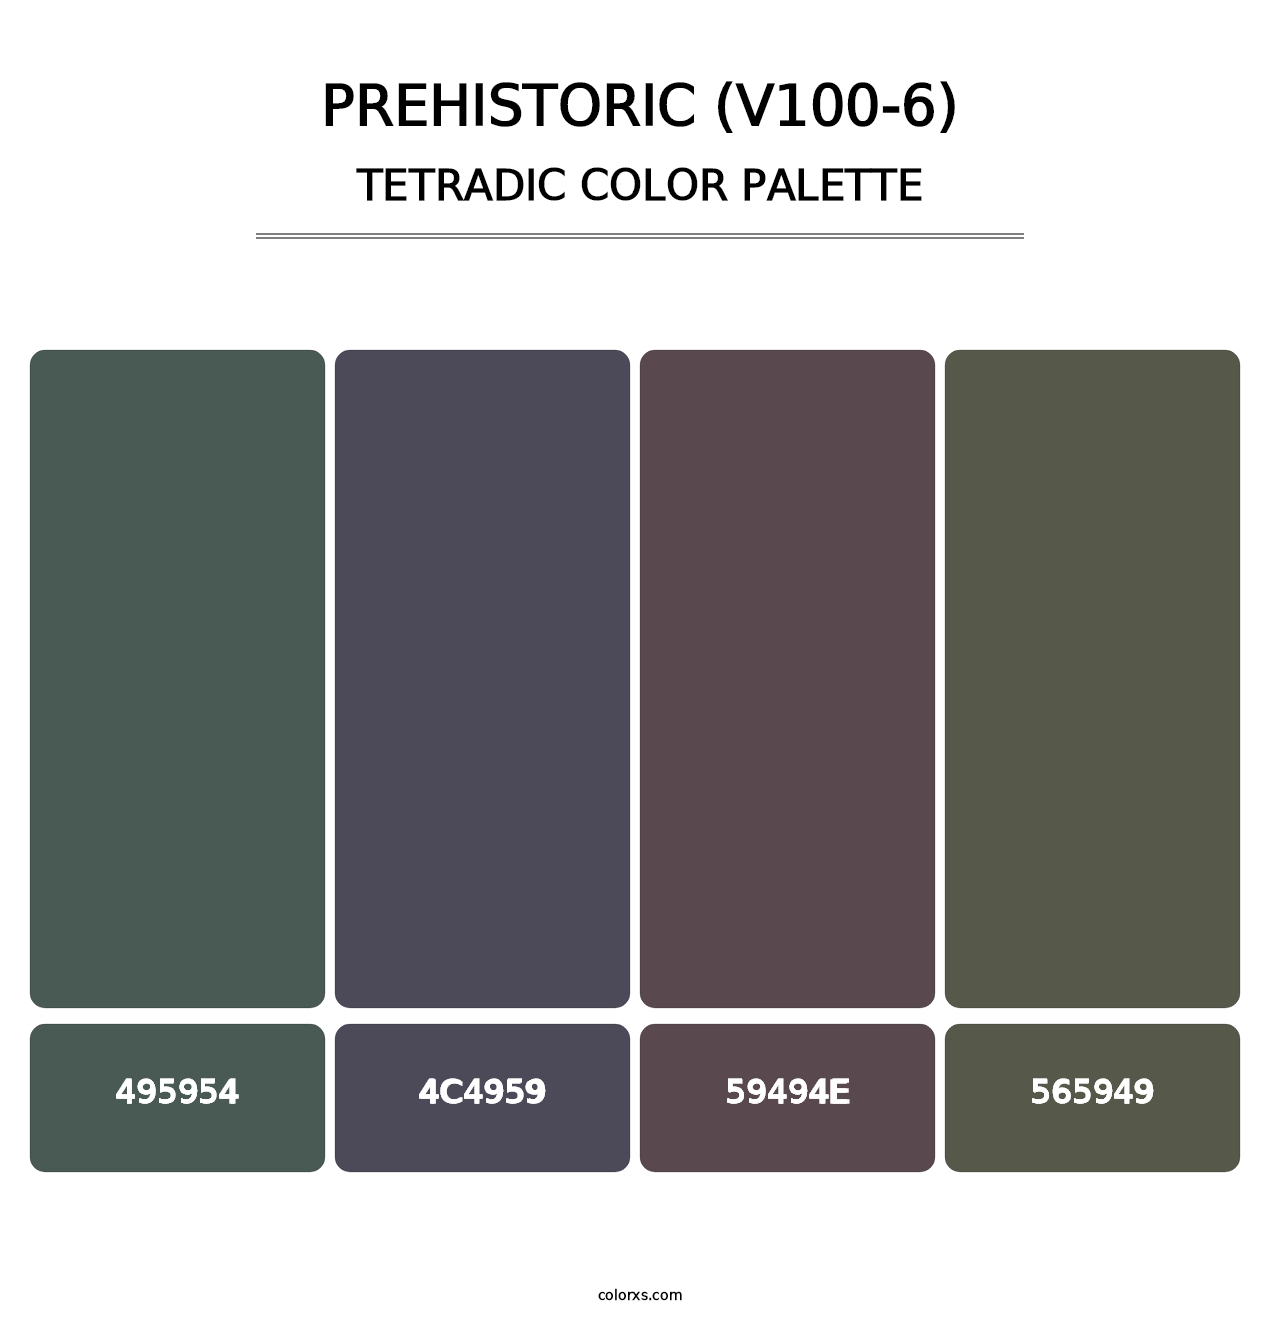 Prehistoric (V100-6) - Tetradic Color Palette